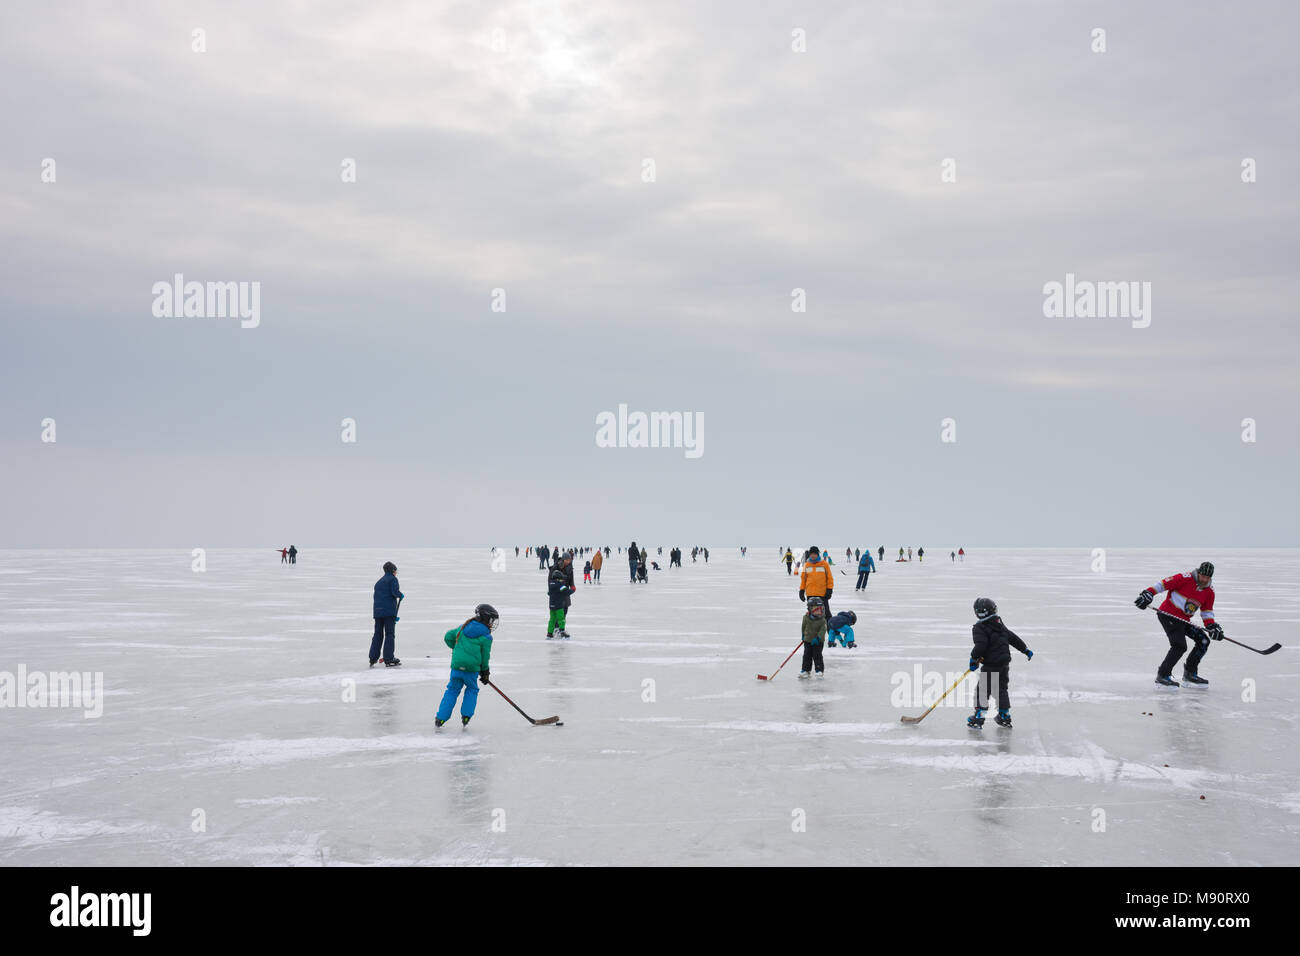 Eislaufen auf dem zugefrorenen Neusiedler See in Stumpf trübe und kalte  Winter Wetter Stockfotografie - Alamy